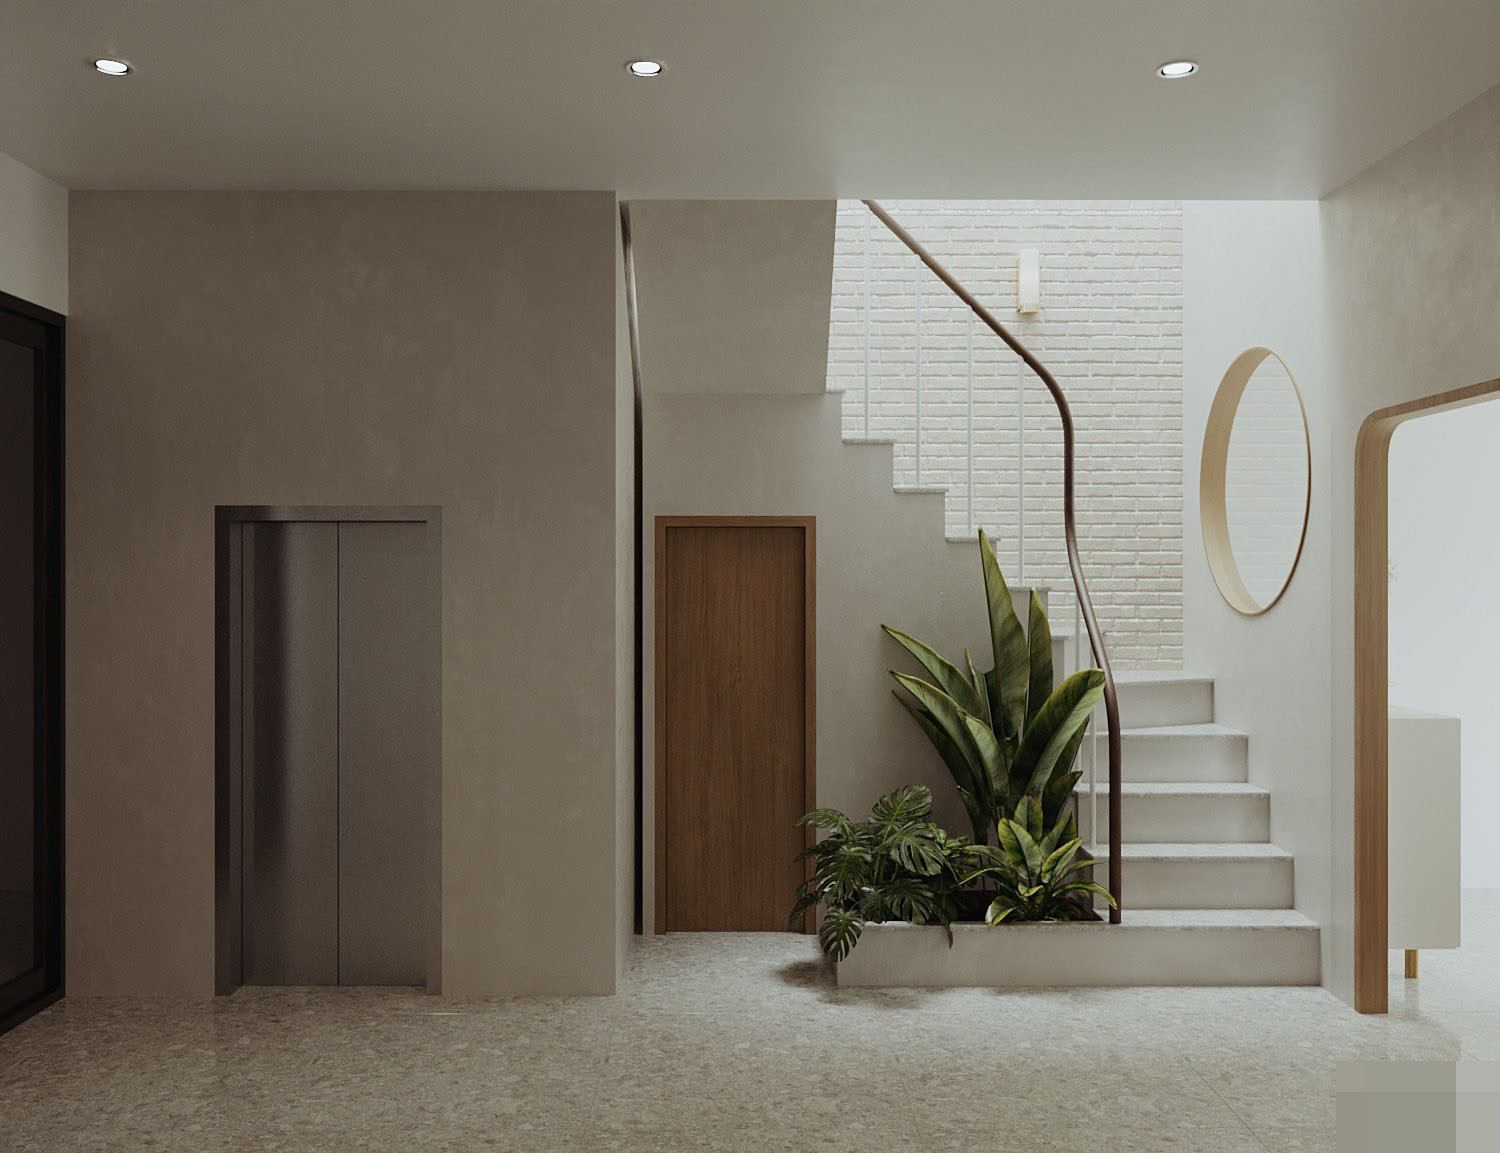 Lắp đặt thang máy theo phong cách tối giản tạo cảm giác của một thể thống nhất hài hòa với toàn bộ kiến trúc 